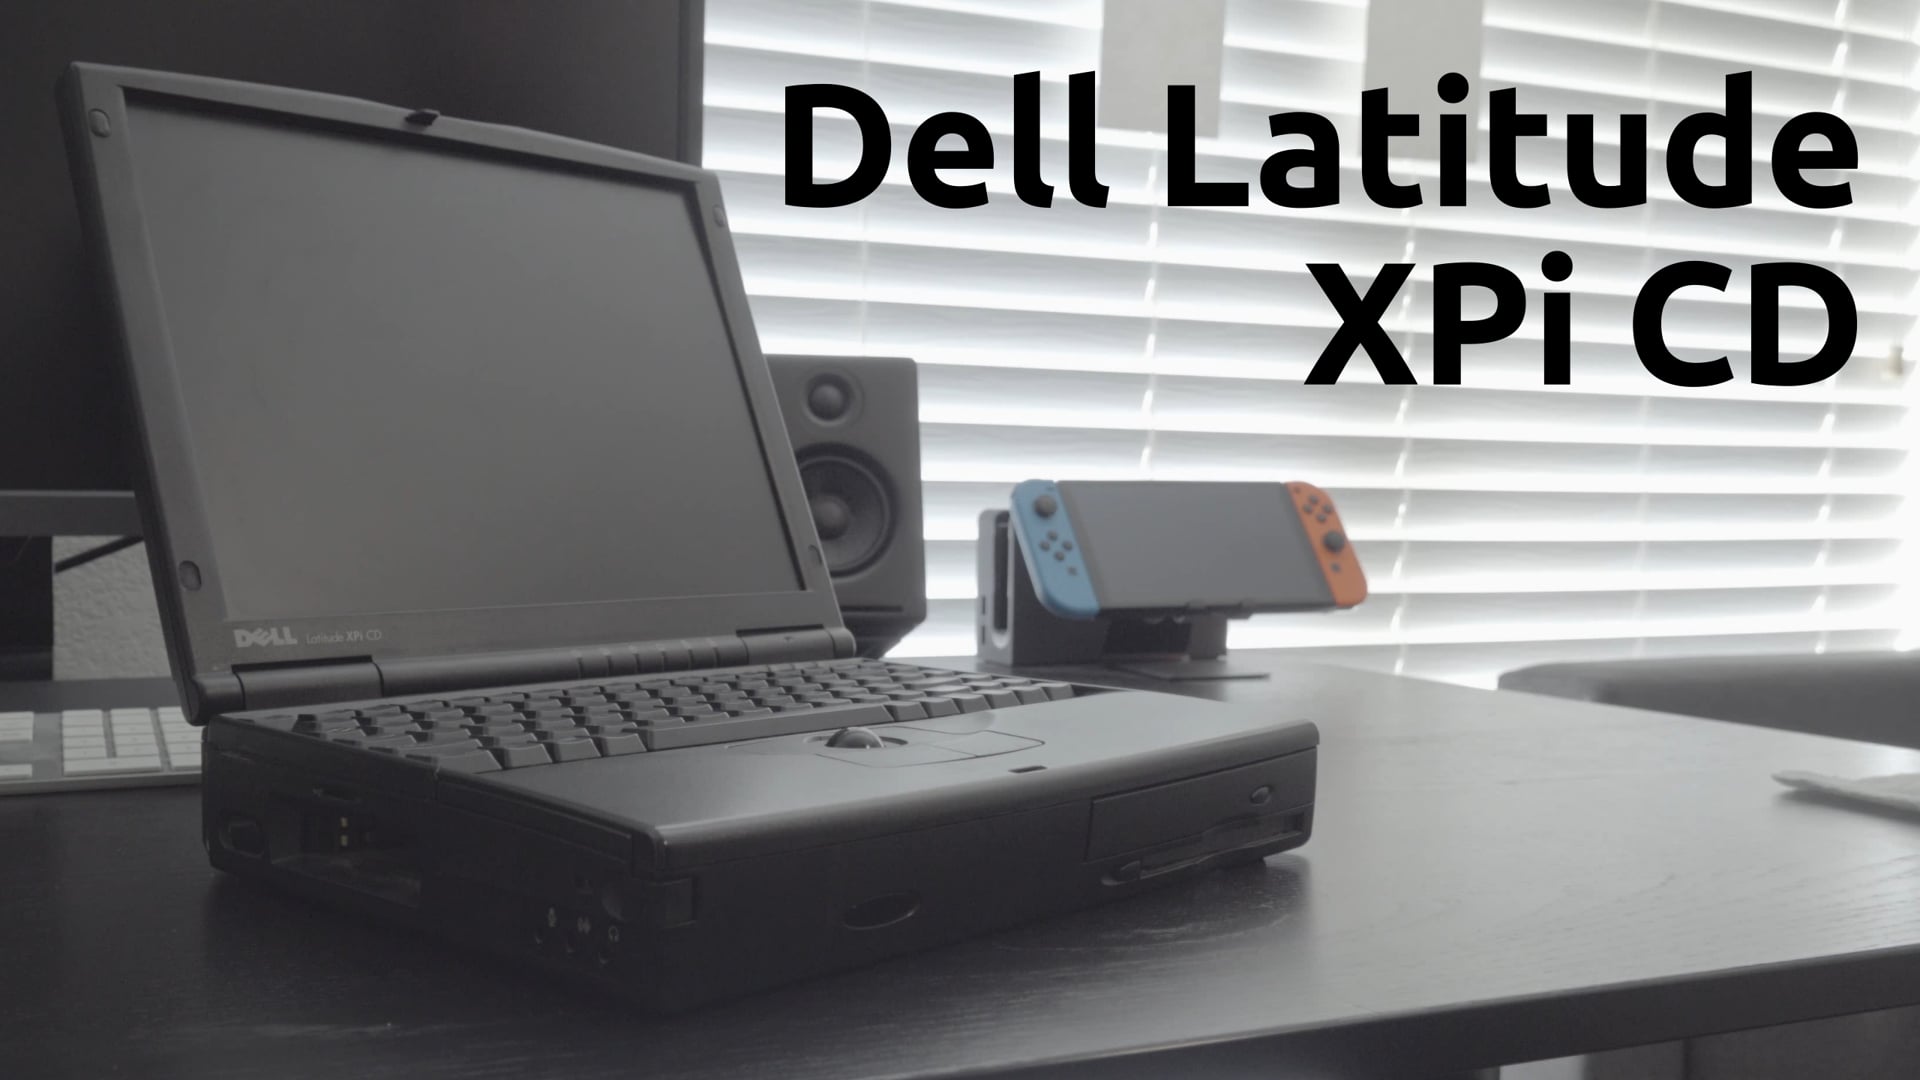 Dell Latitude XPi CD